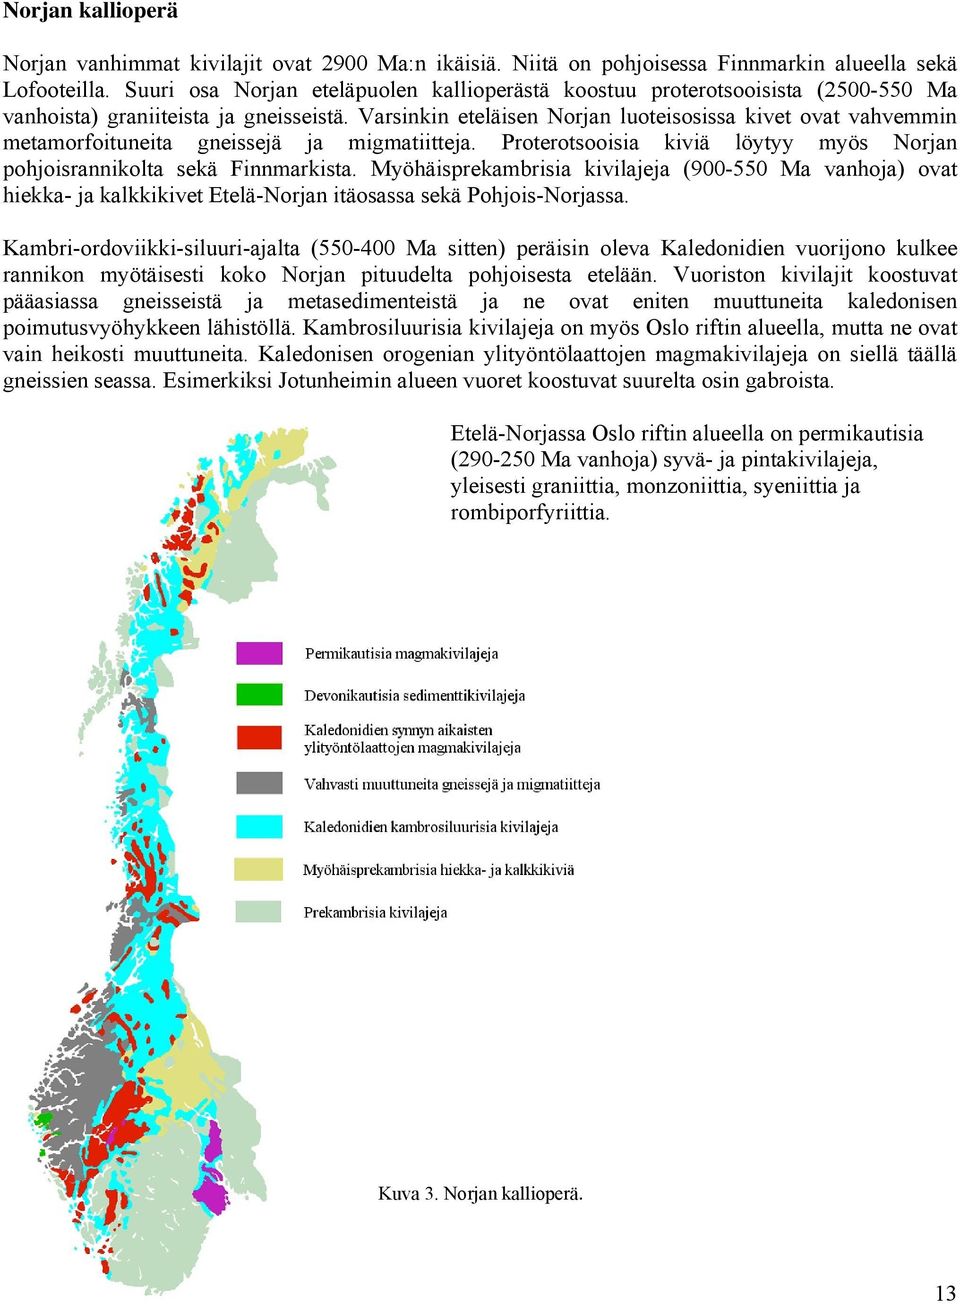 Varsinkin eteläisen Norjan luoteisosissa kivet ovat vahvemmin metamorfoituneita gneissejä ja migmatiitteja. Proterotsooisia kiviä löytyy myös Norjan pohjoisrannikolta sekä Finnmarkista.